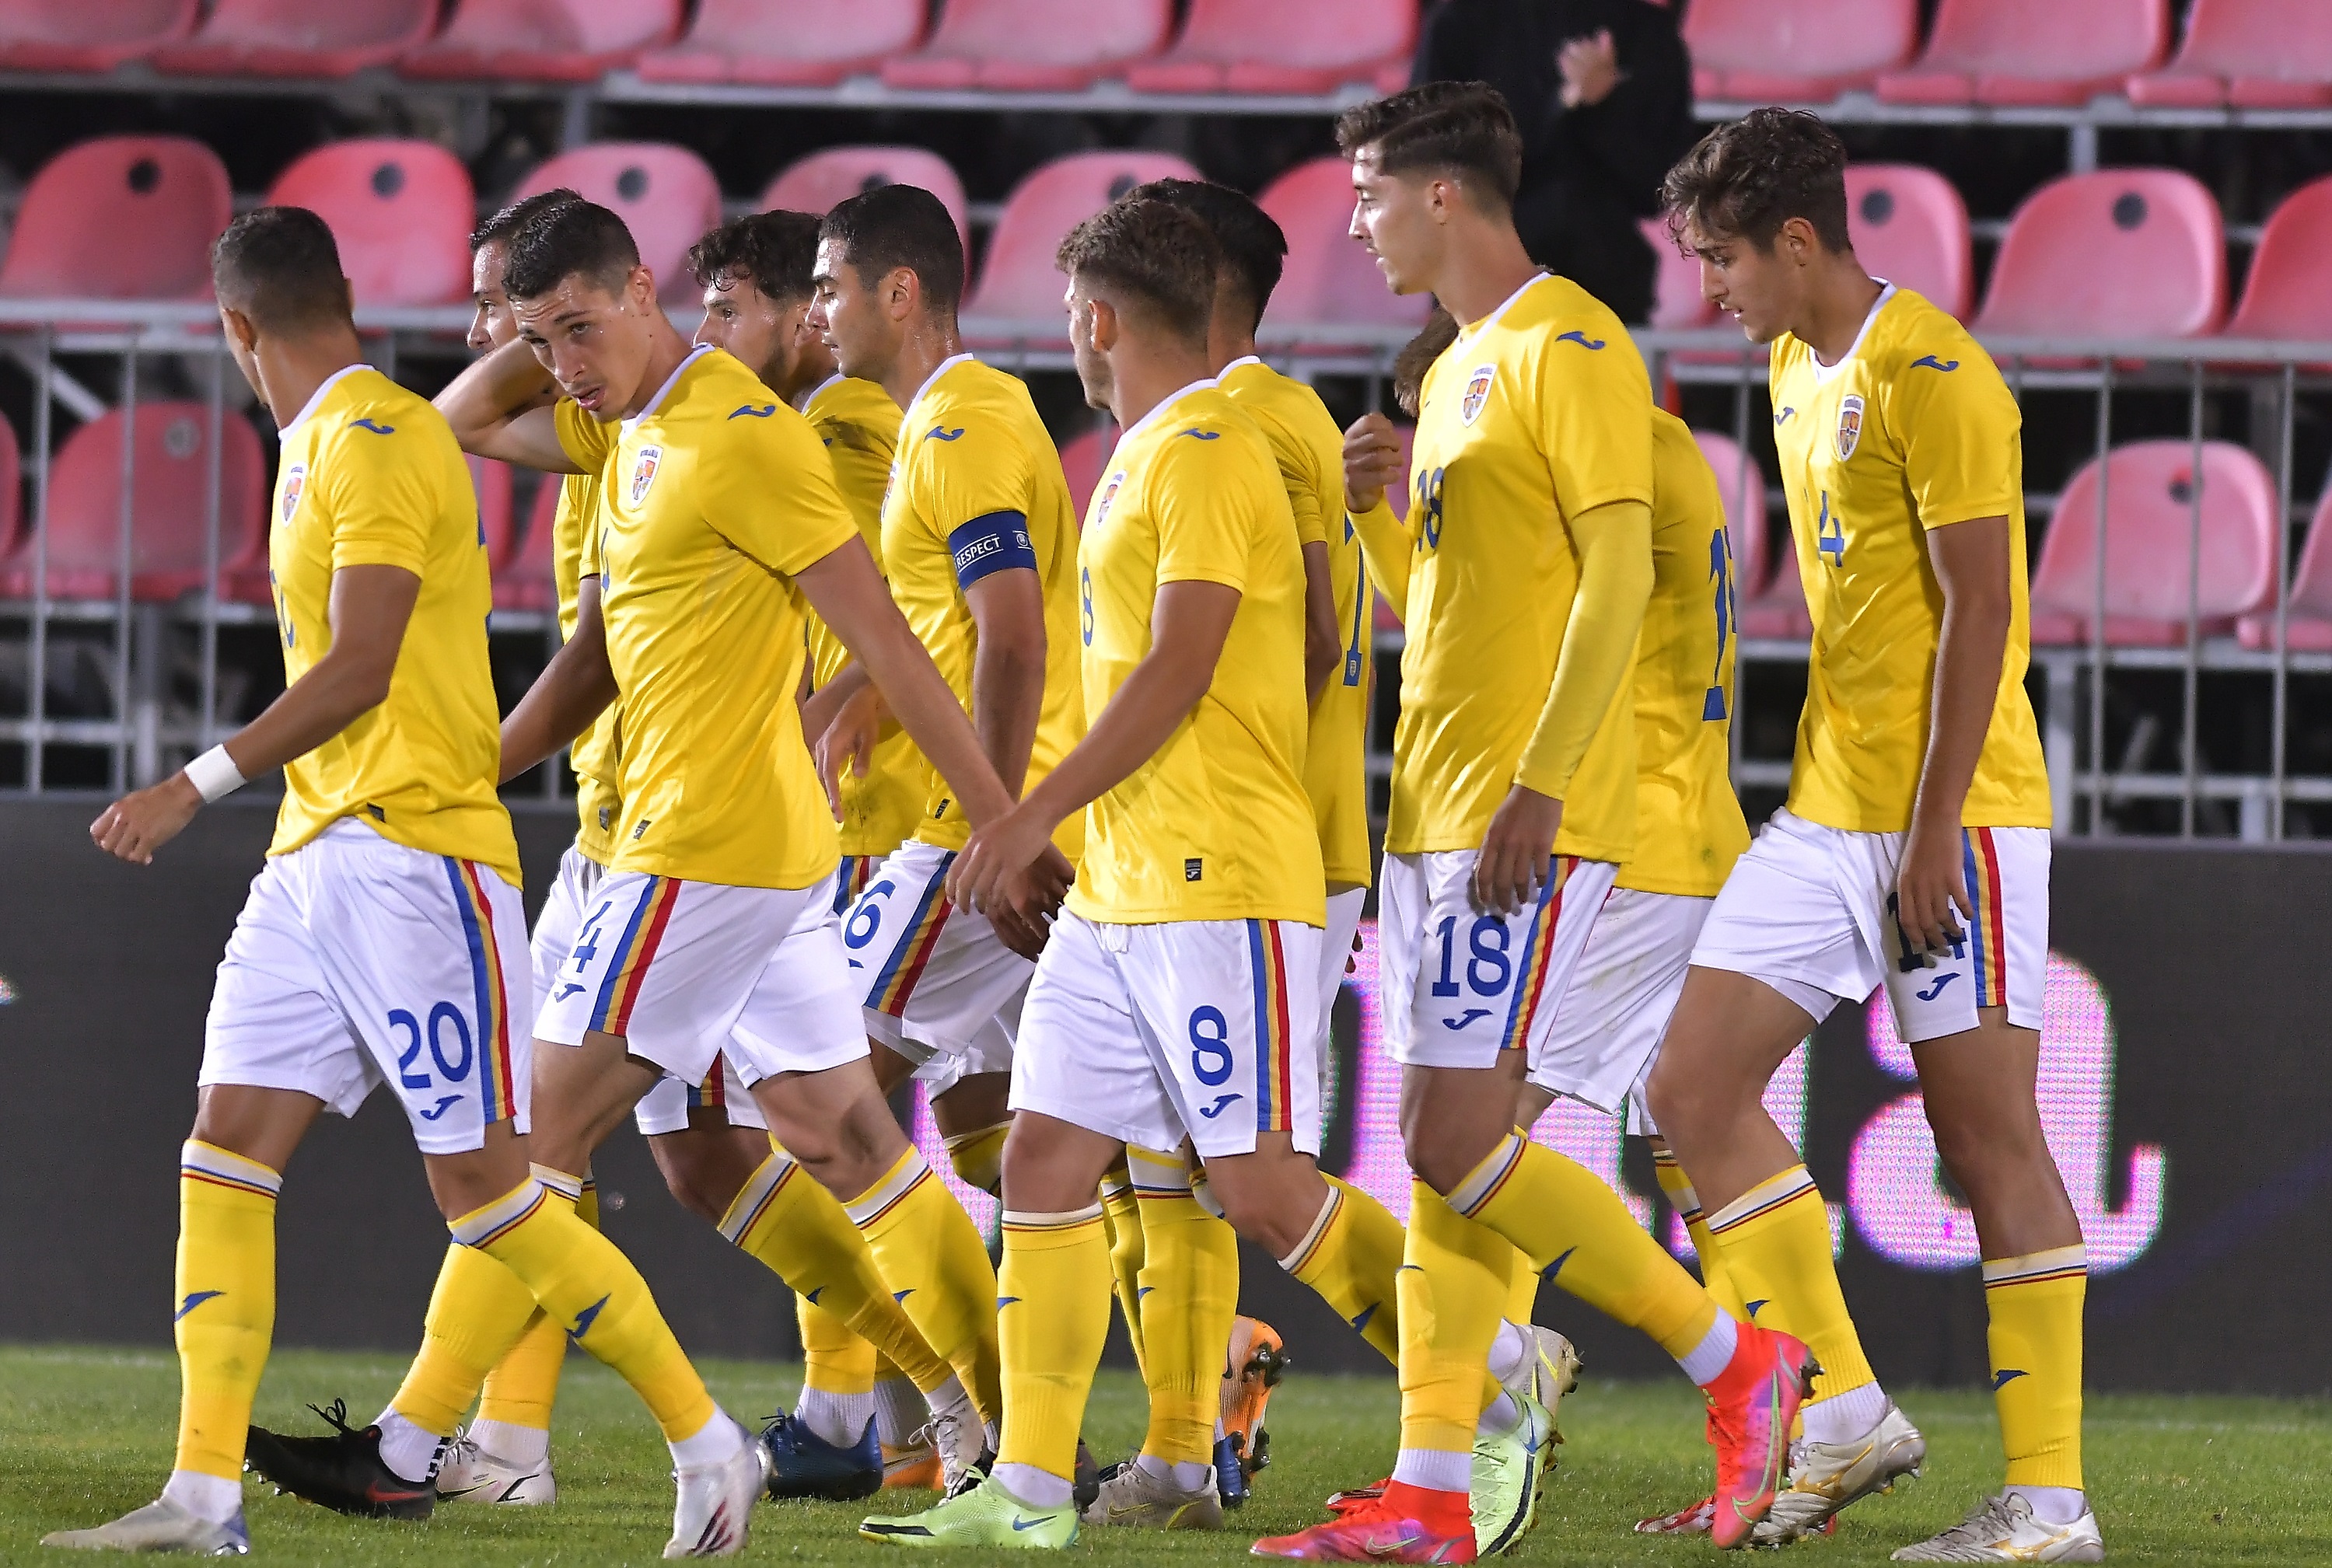 Maroc U21 – România U21, de la 19:00, LIVE TEXT pe digisport.ro. Continuă pregătirea pentru EURO 2023